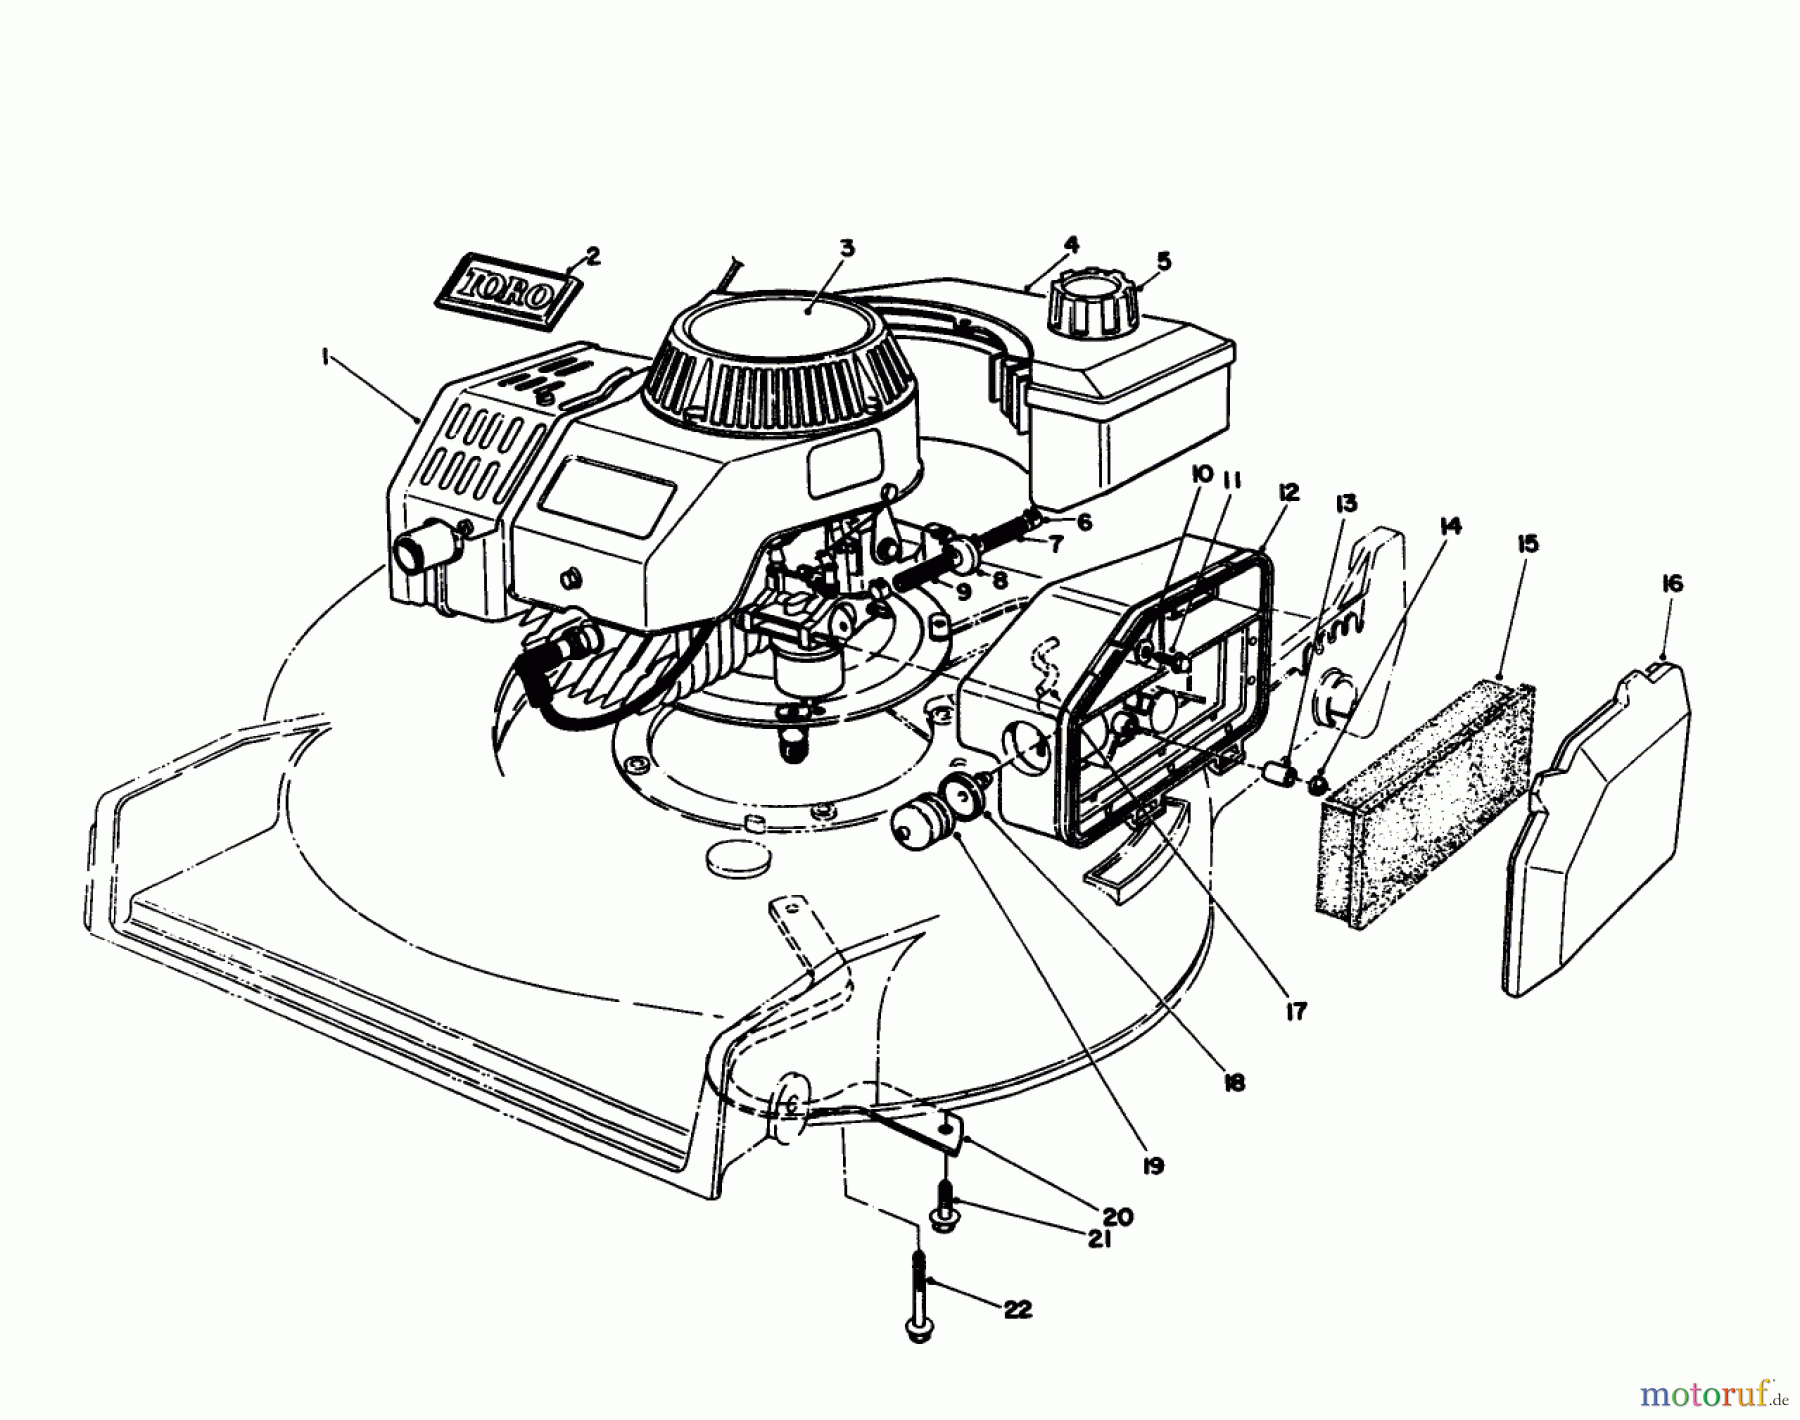  Toro Neu Mowers, Walk-Behind Seite 1 20106 - Toro Lawnmower, 1992 (2000001-2999999) ENGINE ASSEMBLY